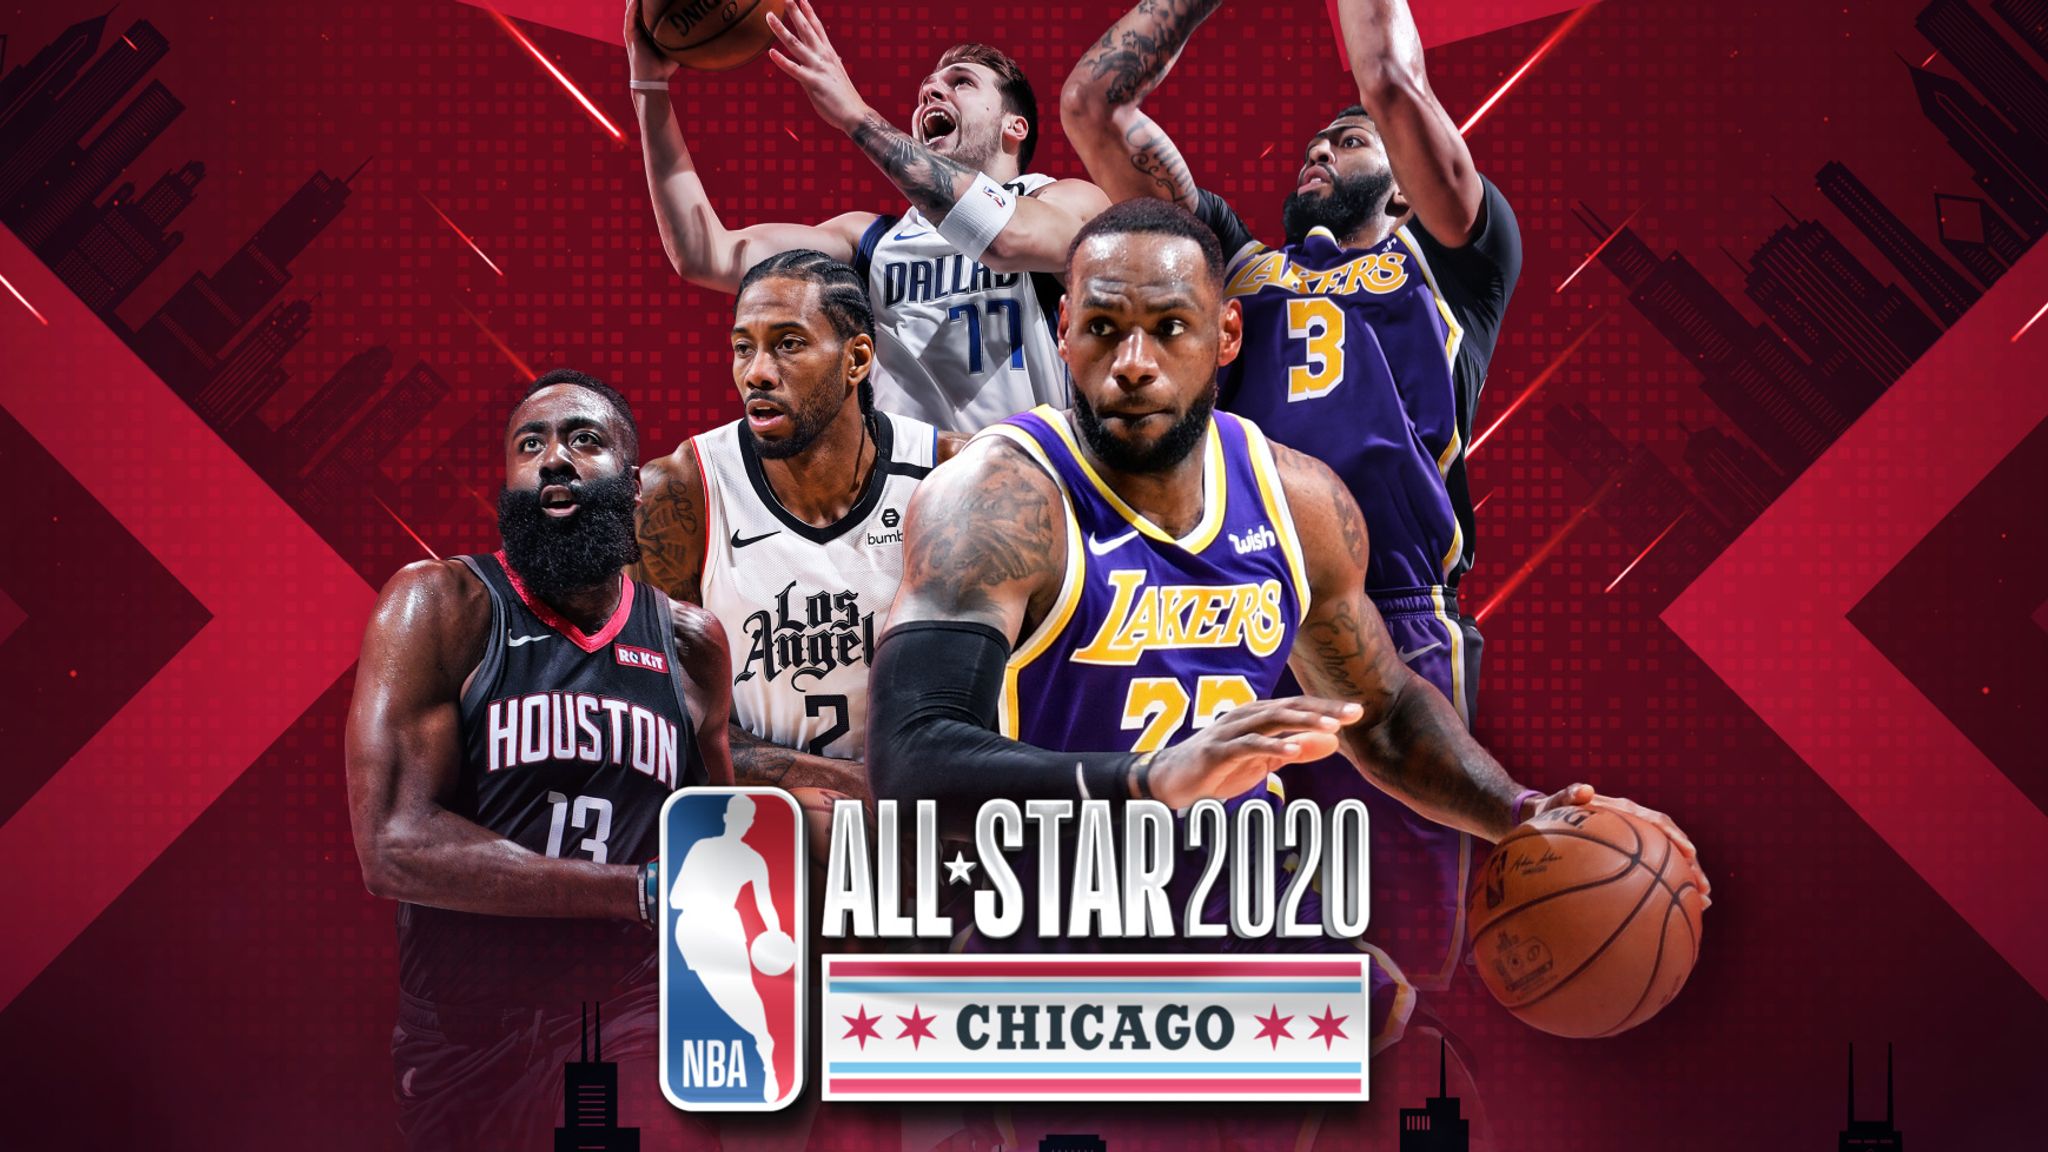 AllStar 2020 LeBron James and Giannis Antetokoumpo draft AllStar